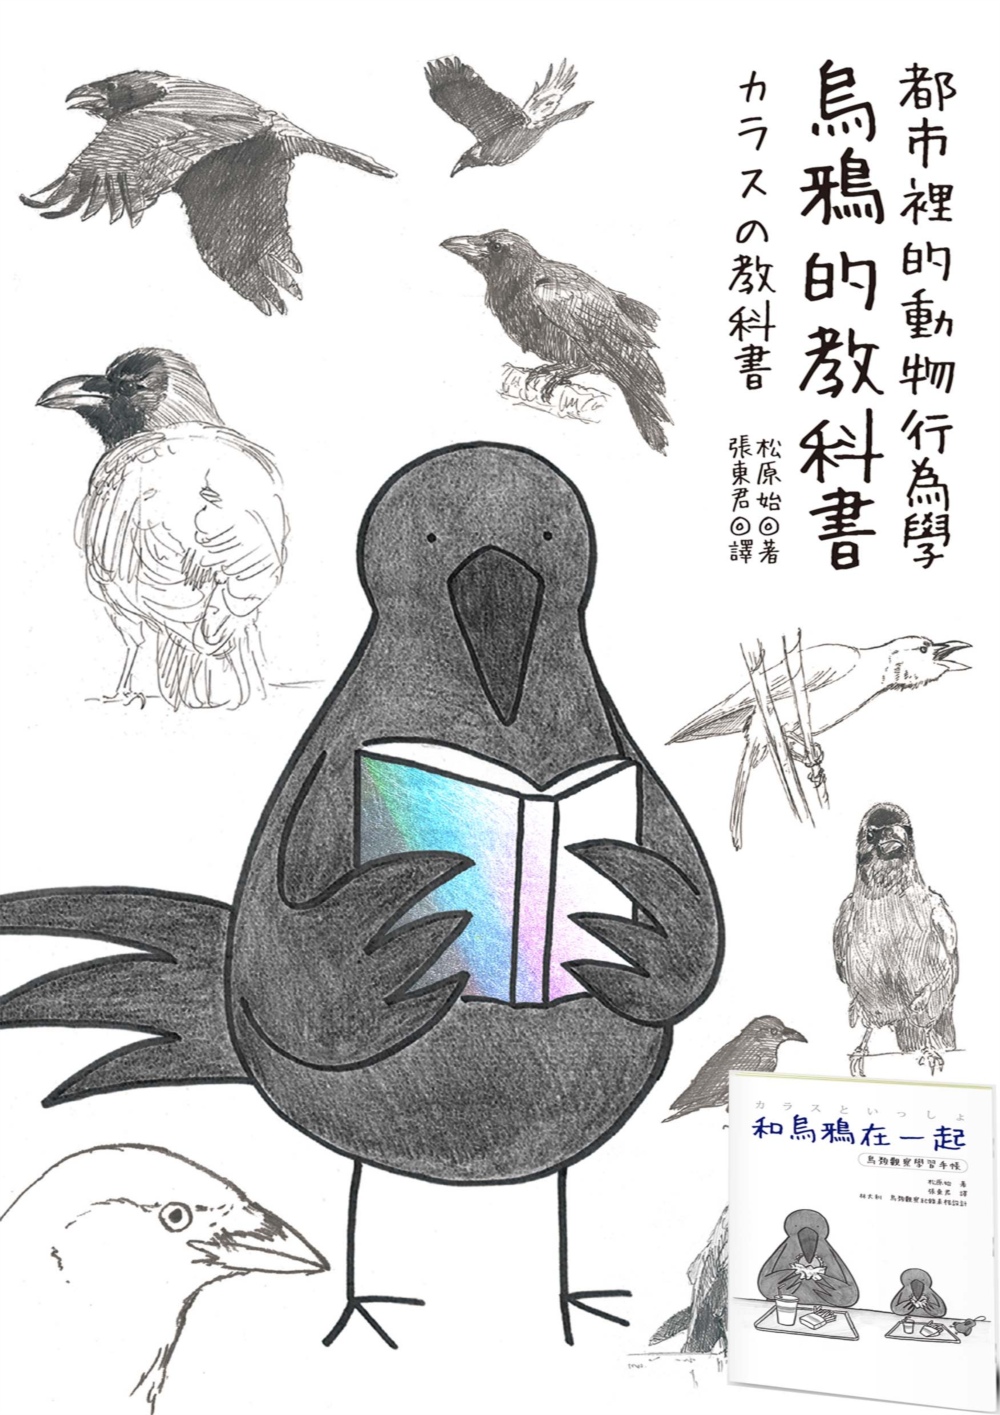 烏鴉的教科書+鳥類觀察手帳雙套書